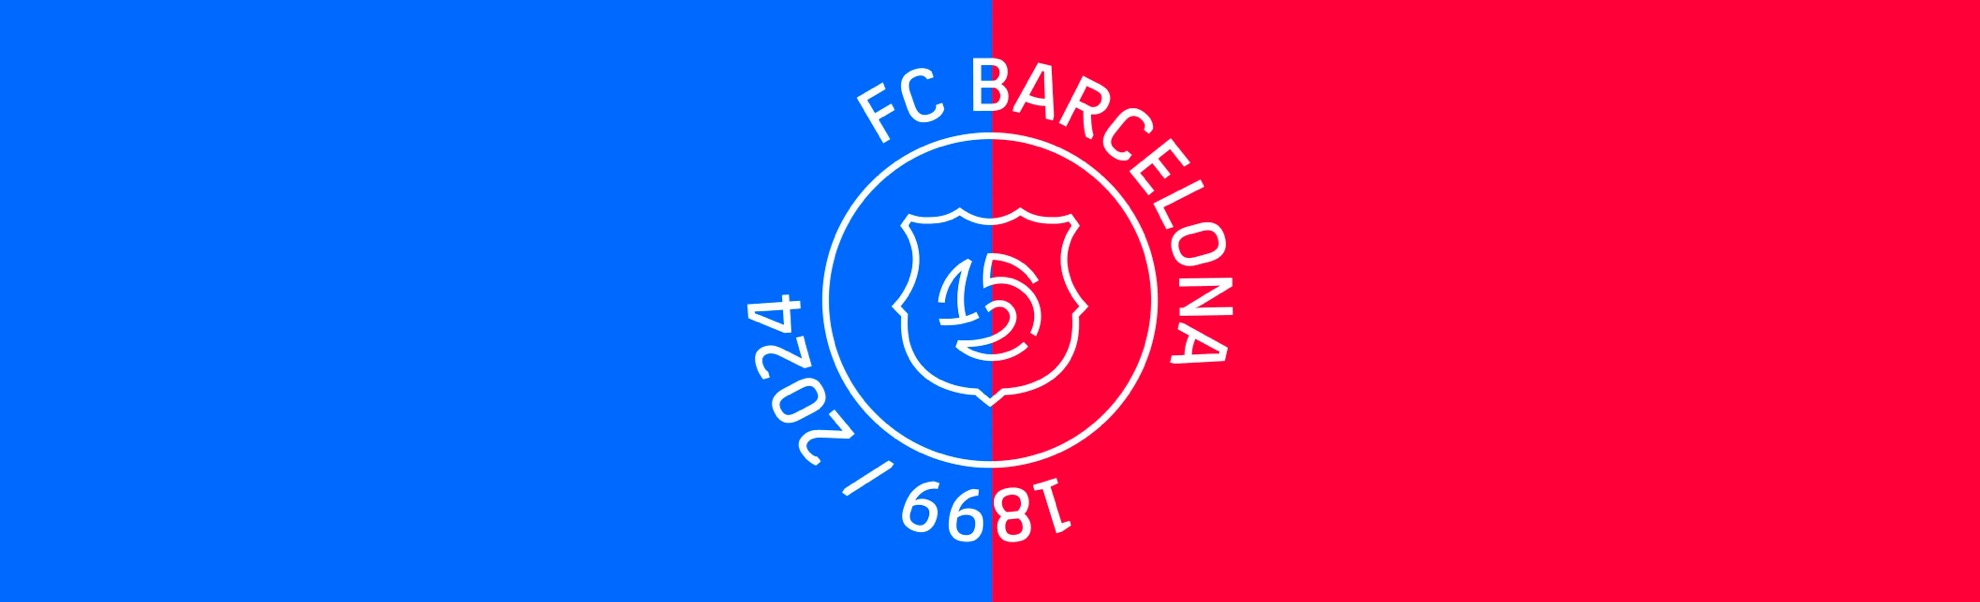 FC Barcelona z jubileuszowym logo